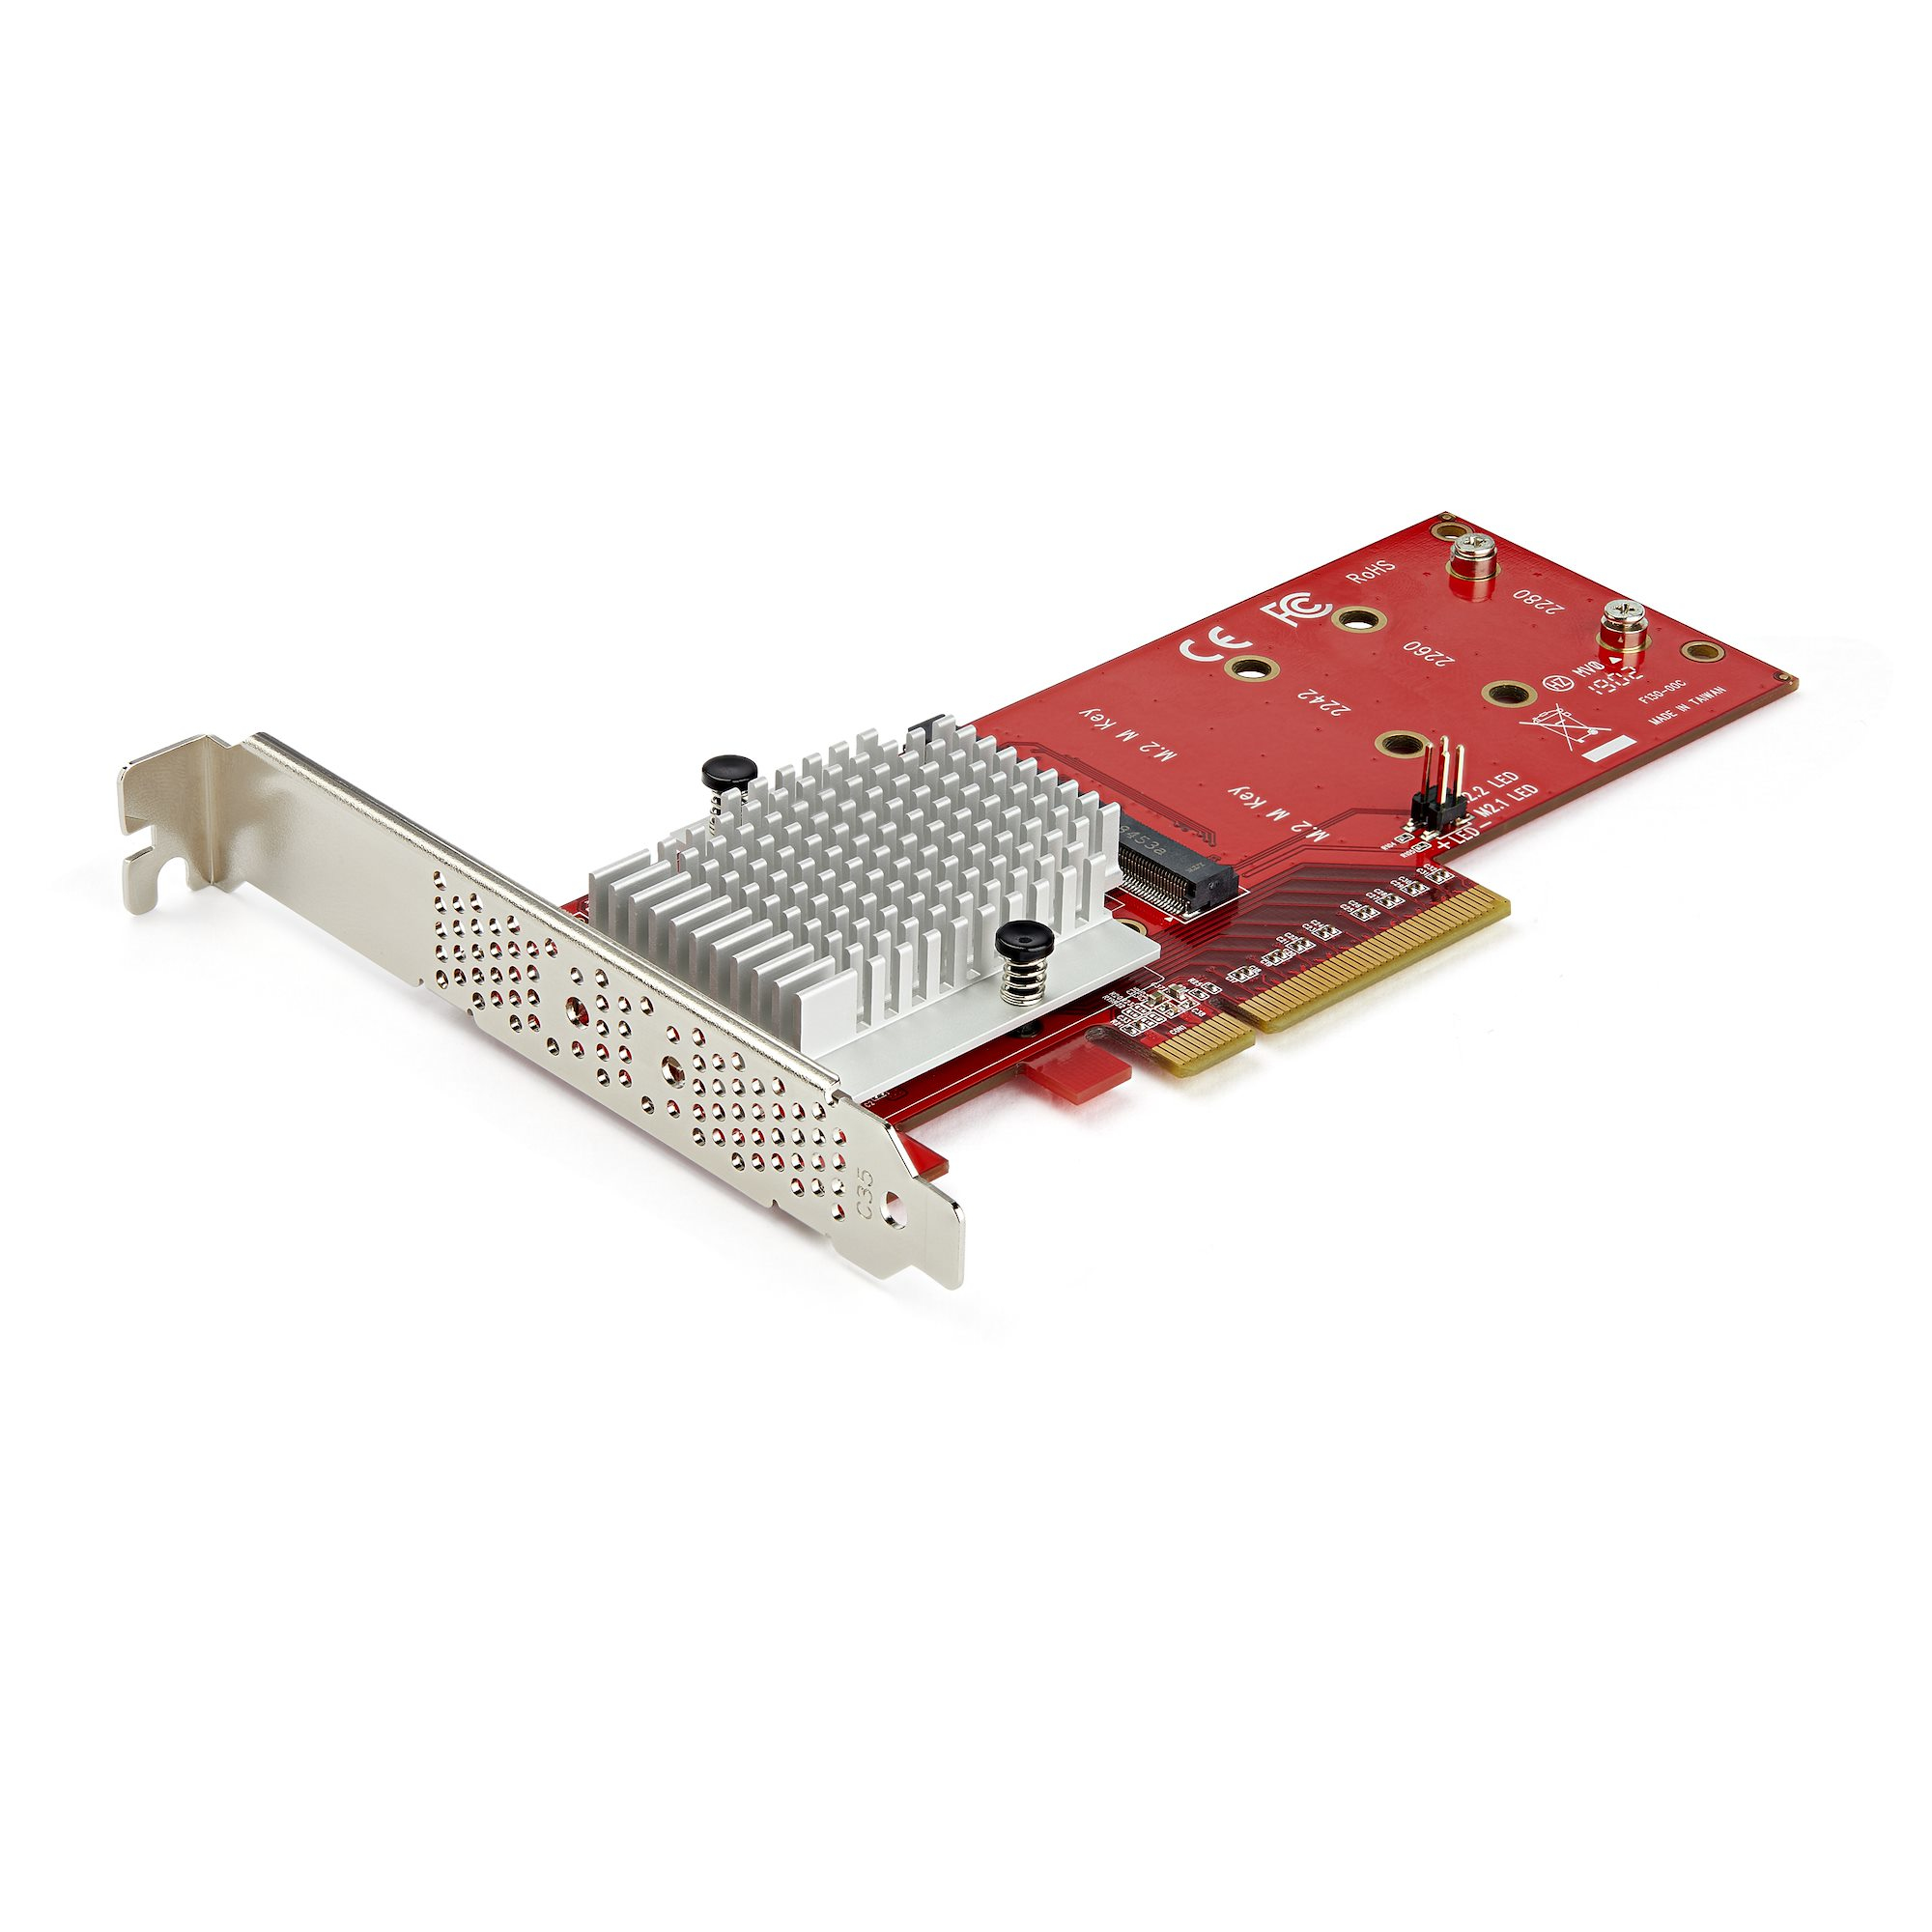 Controller/Adattatore X8 per 2 unita SSD PCIe M.2 NVME full size